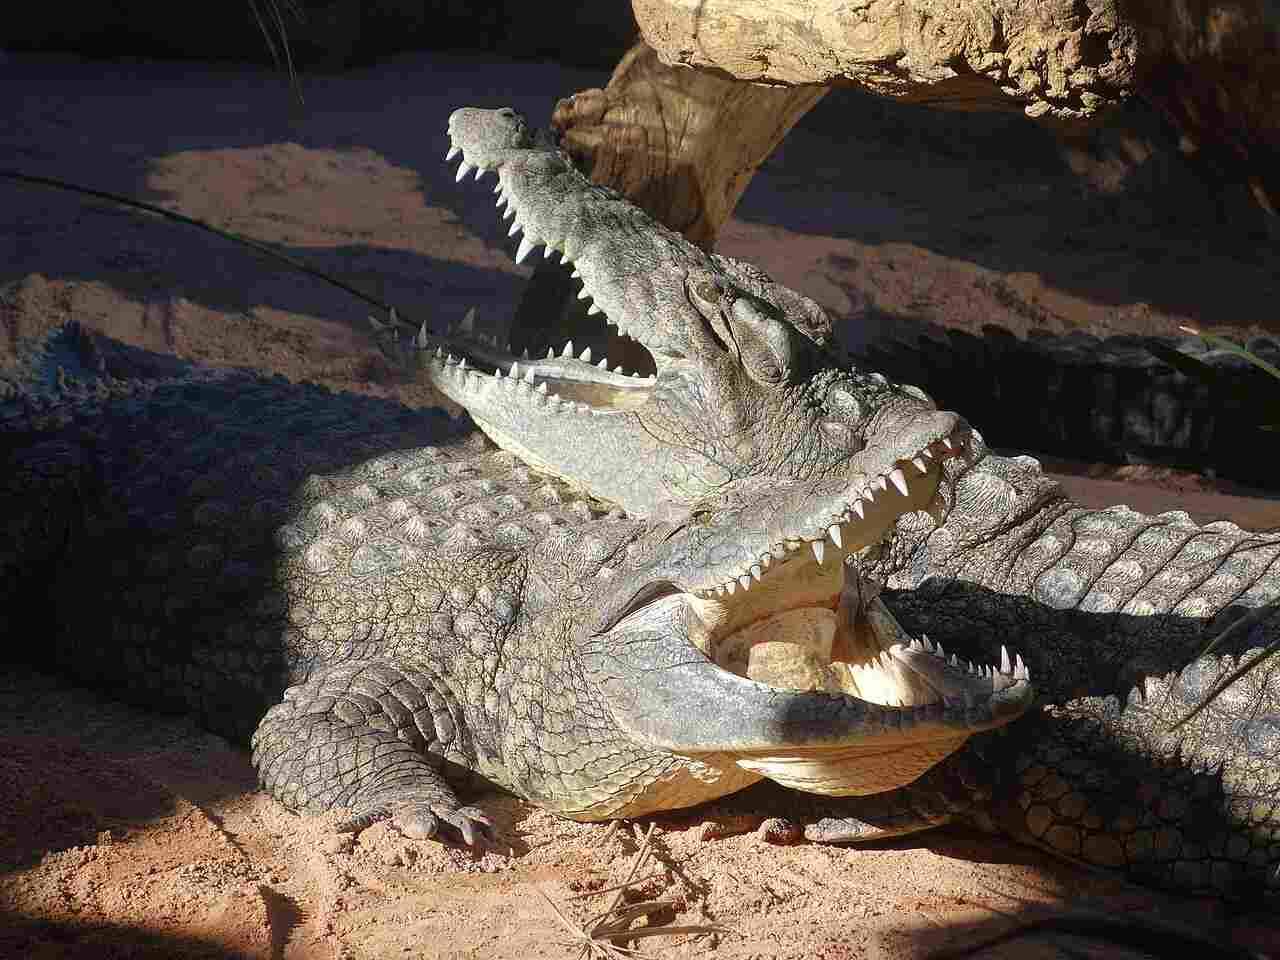 caiman vs alligator vs crocodile